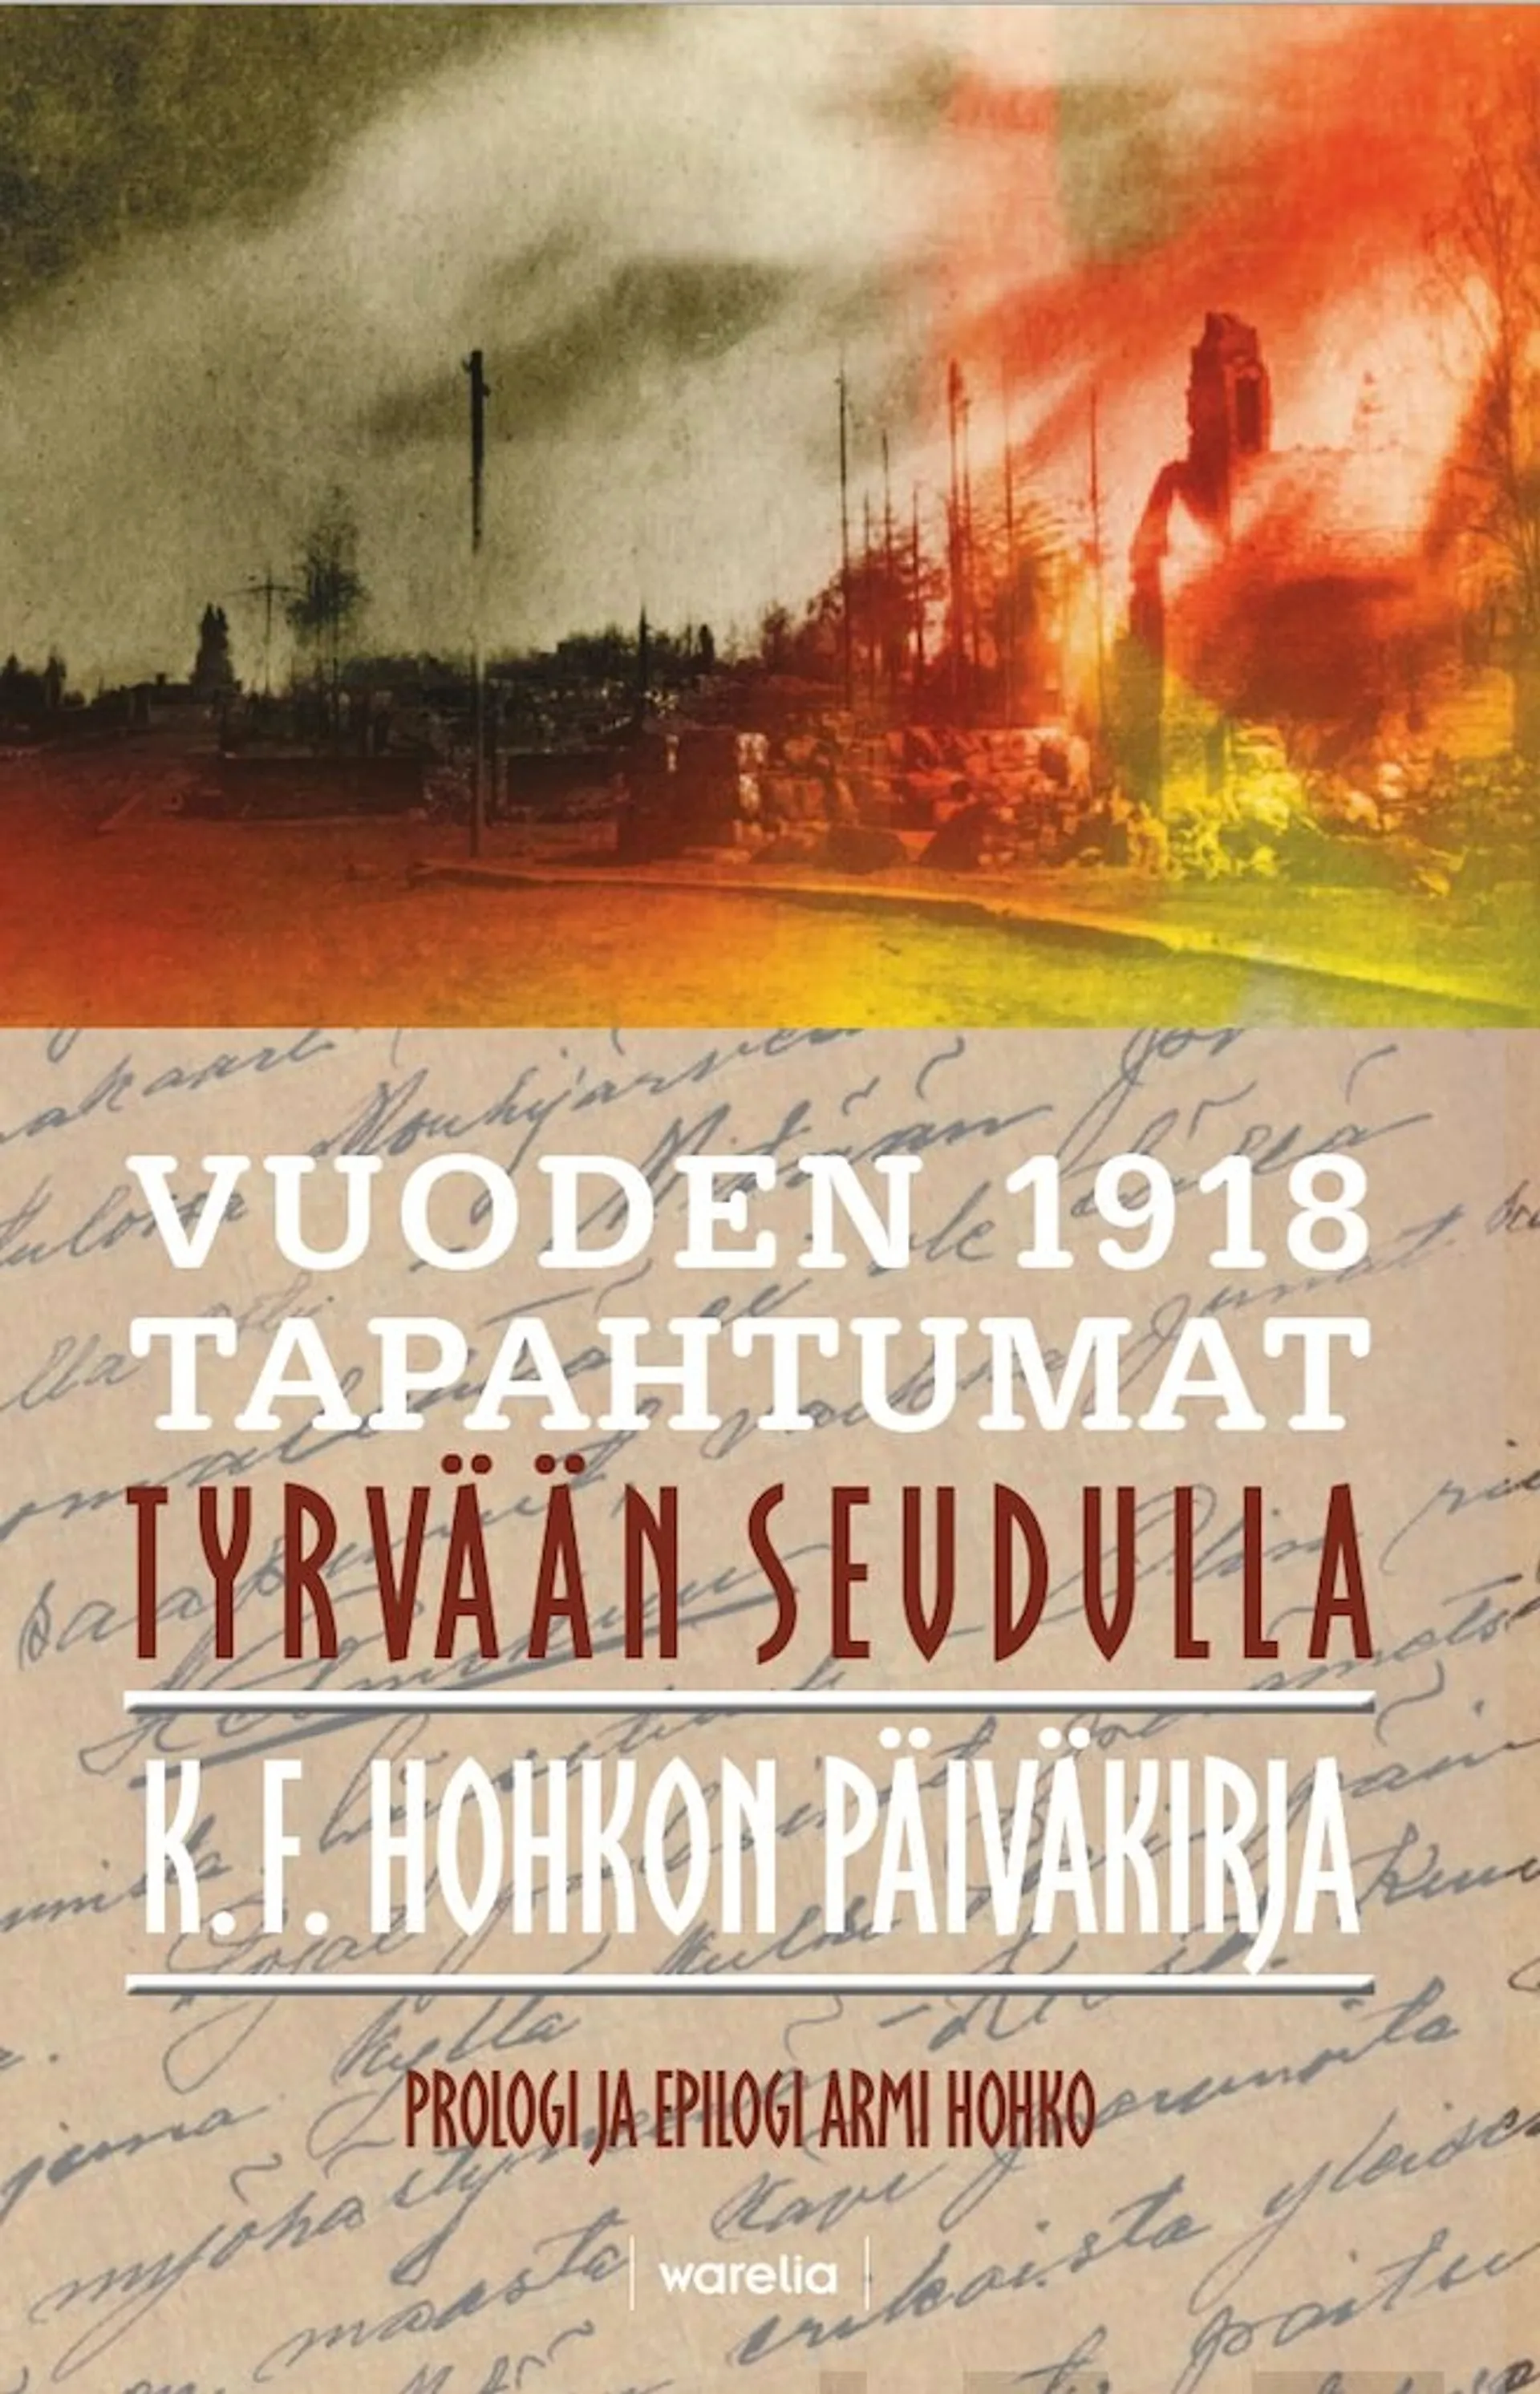 Hohko, Vuoden 1918 tapahtumat Tyrvään seudulla - K. F. Hohkon päiväkirja